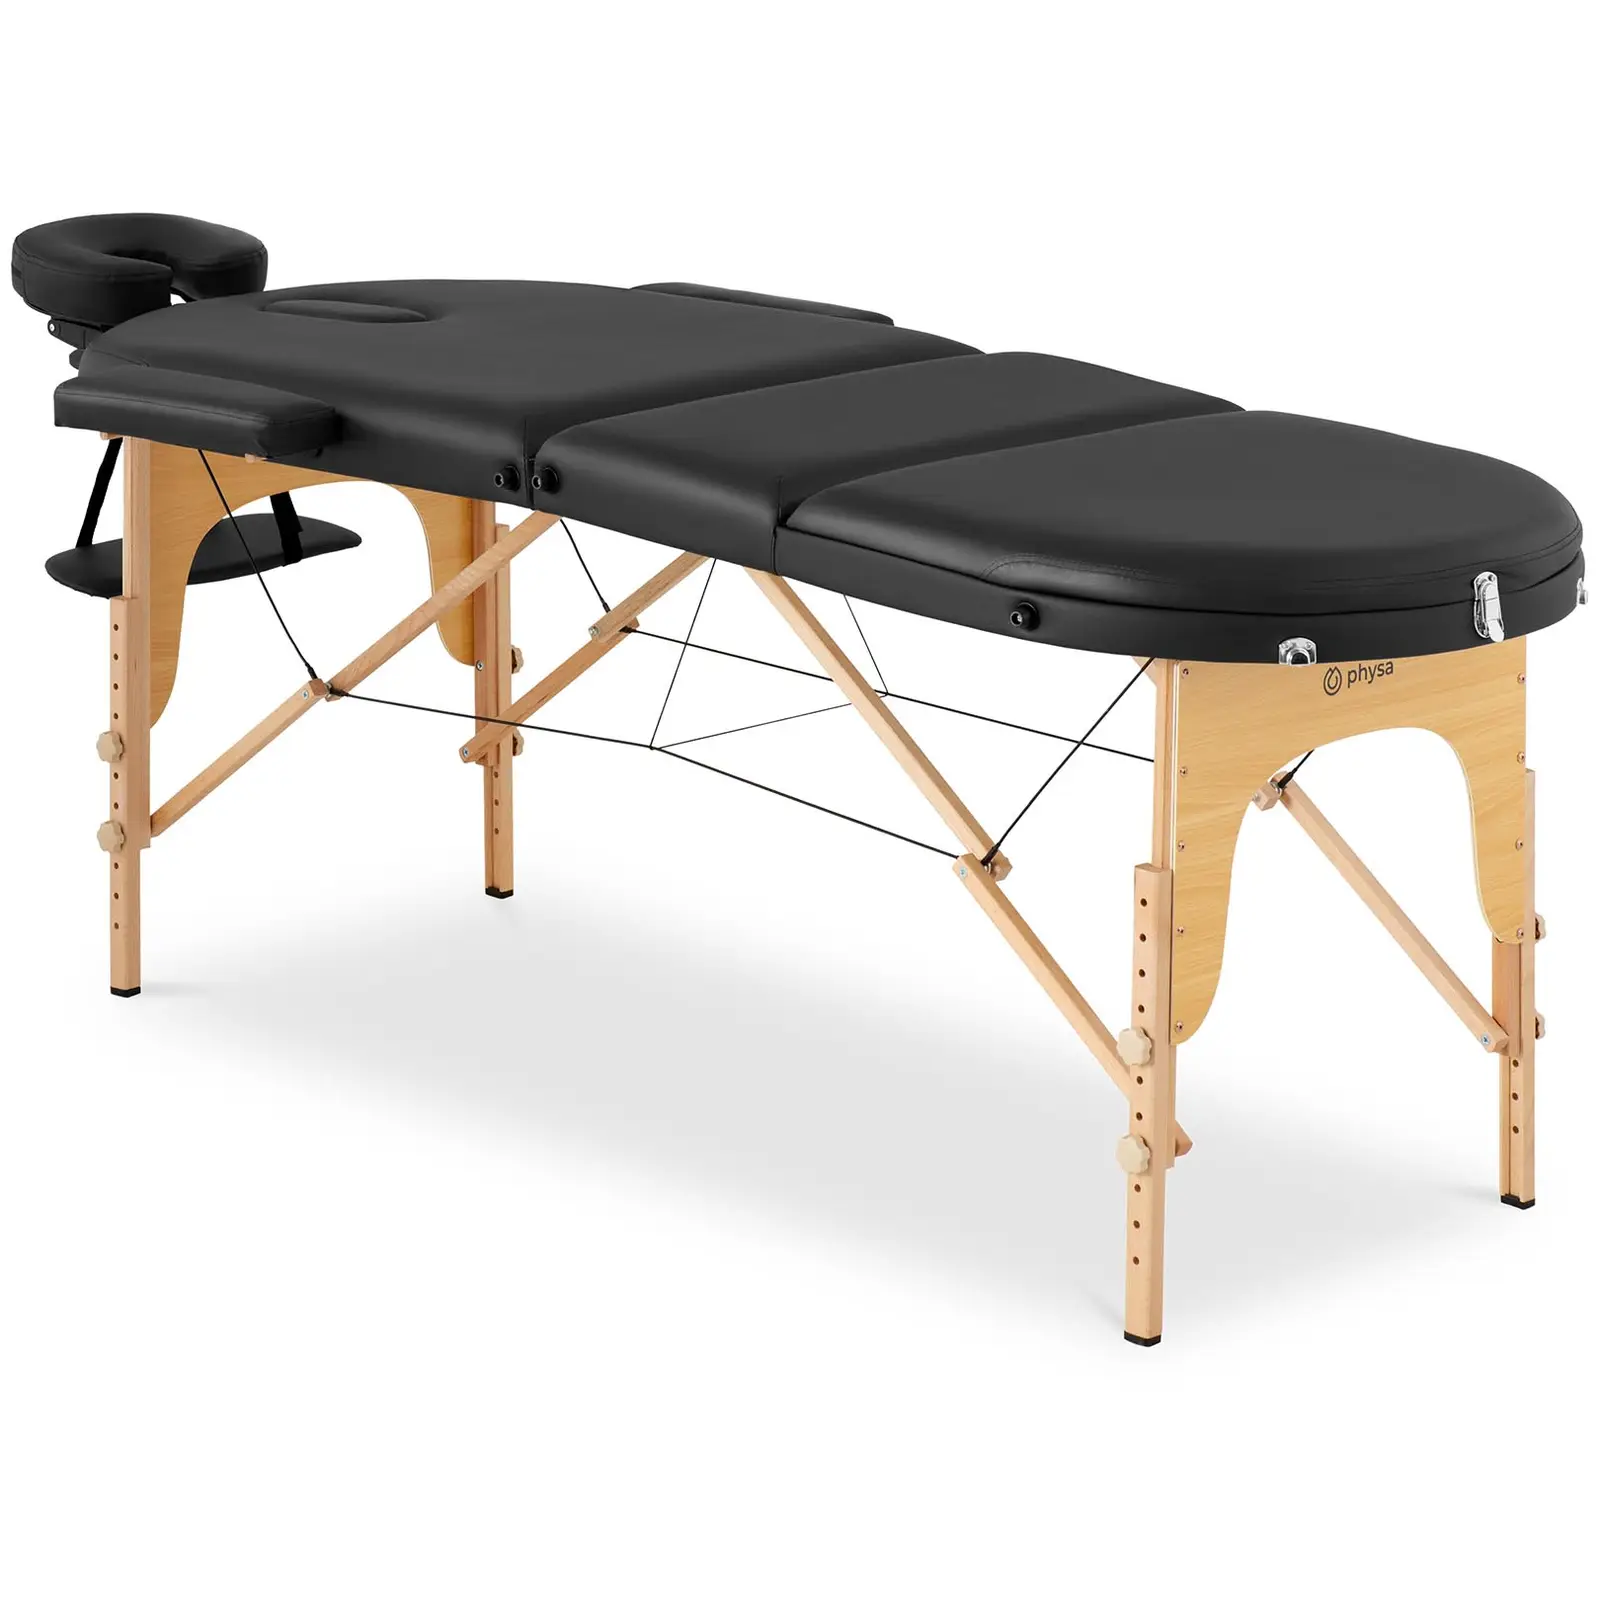 Sulankstomas masažo stalas - 185-211 x 70-88 x 63-85 cm - 227 kg - juodas